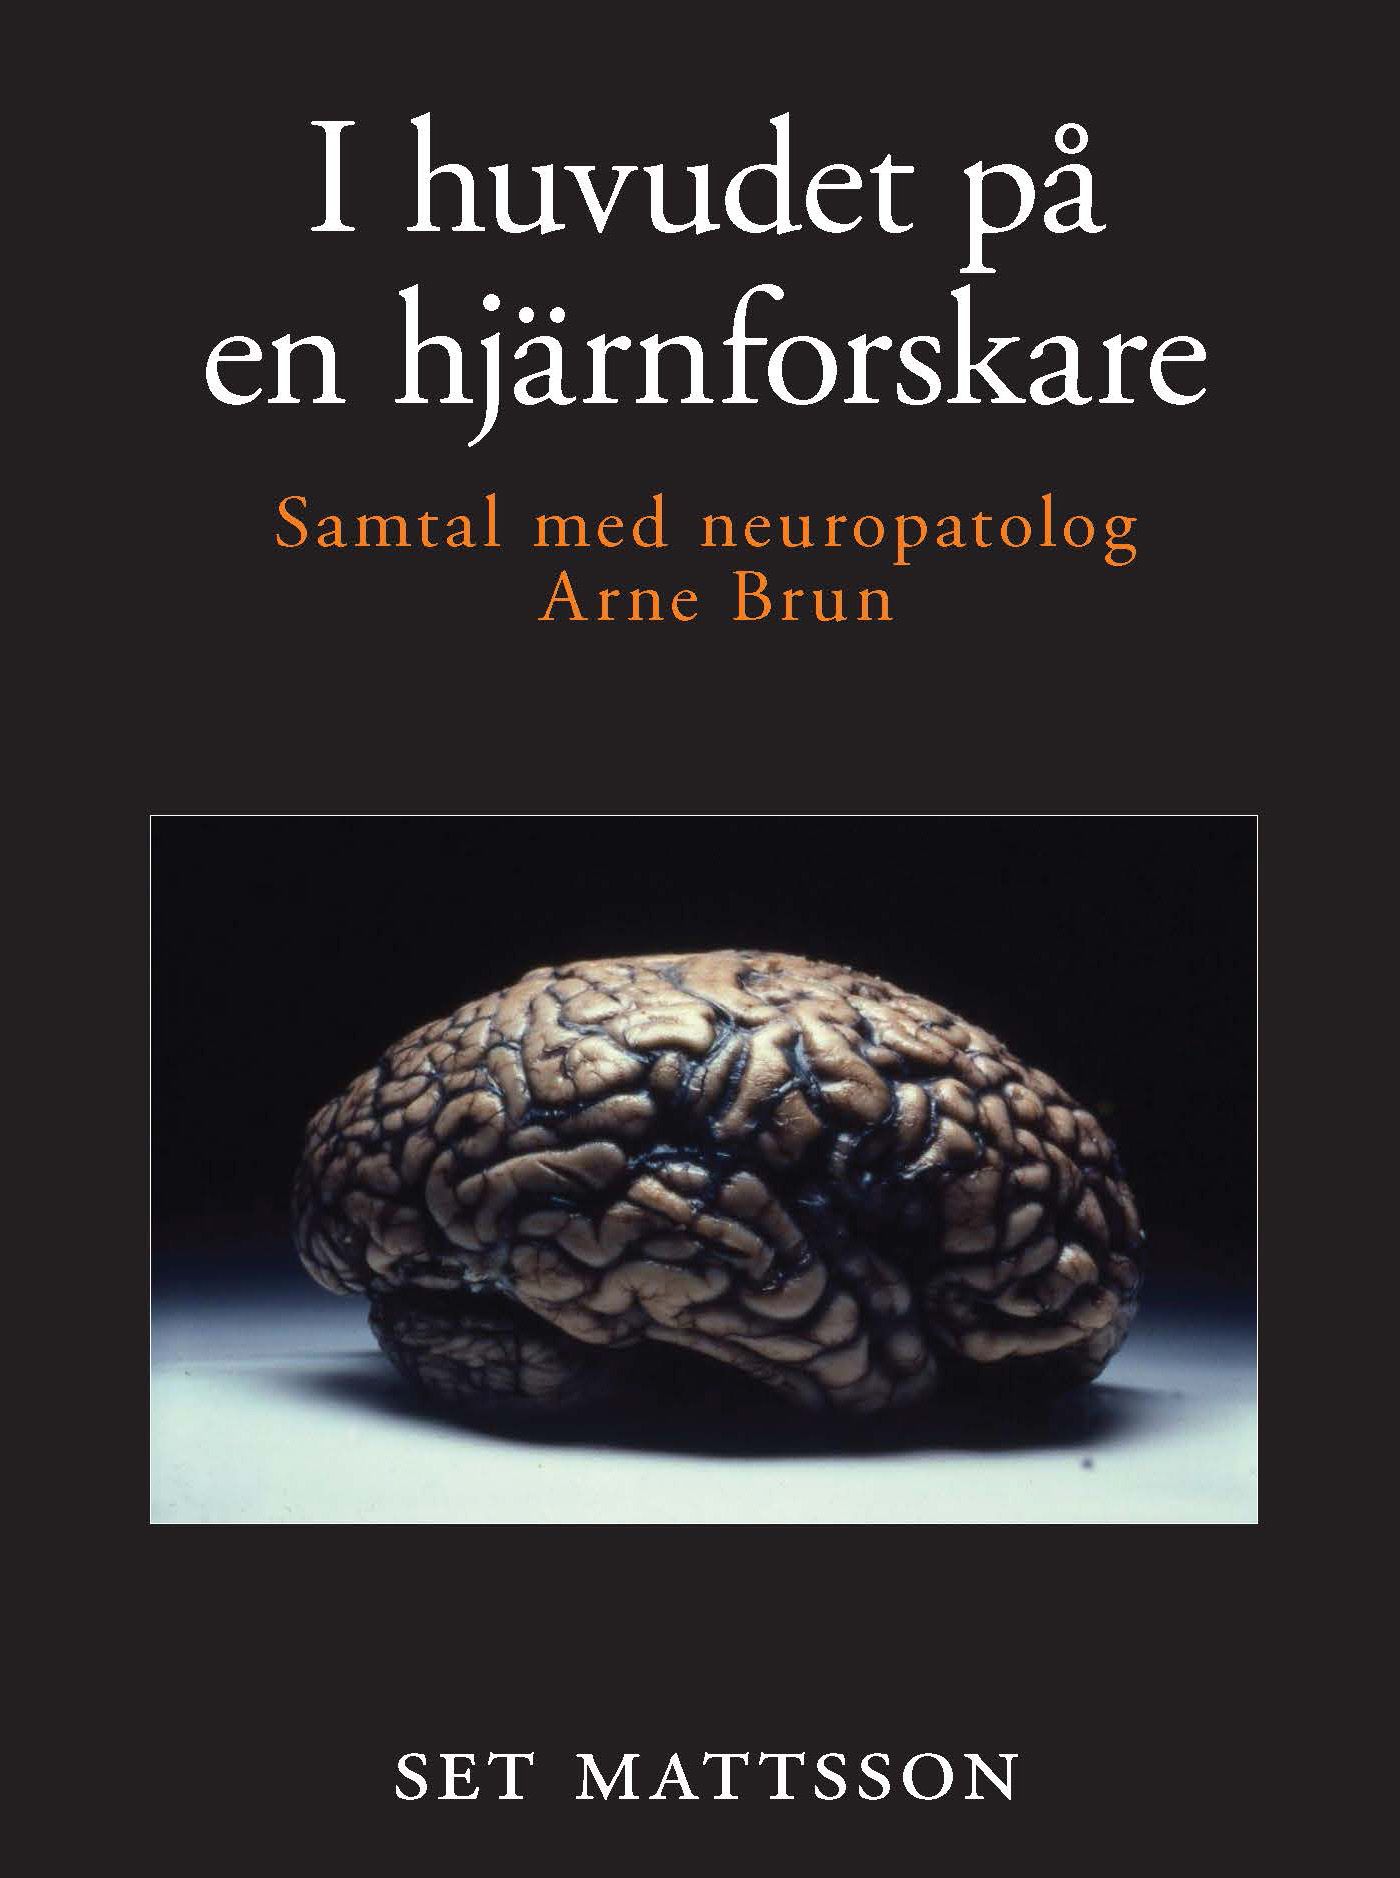 I huvudet på en hjärnforskare - samtal med neuropatolog Arne Brun, e-bok av Set Mattsson